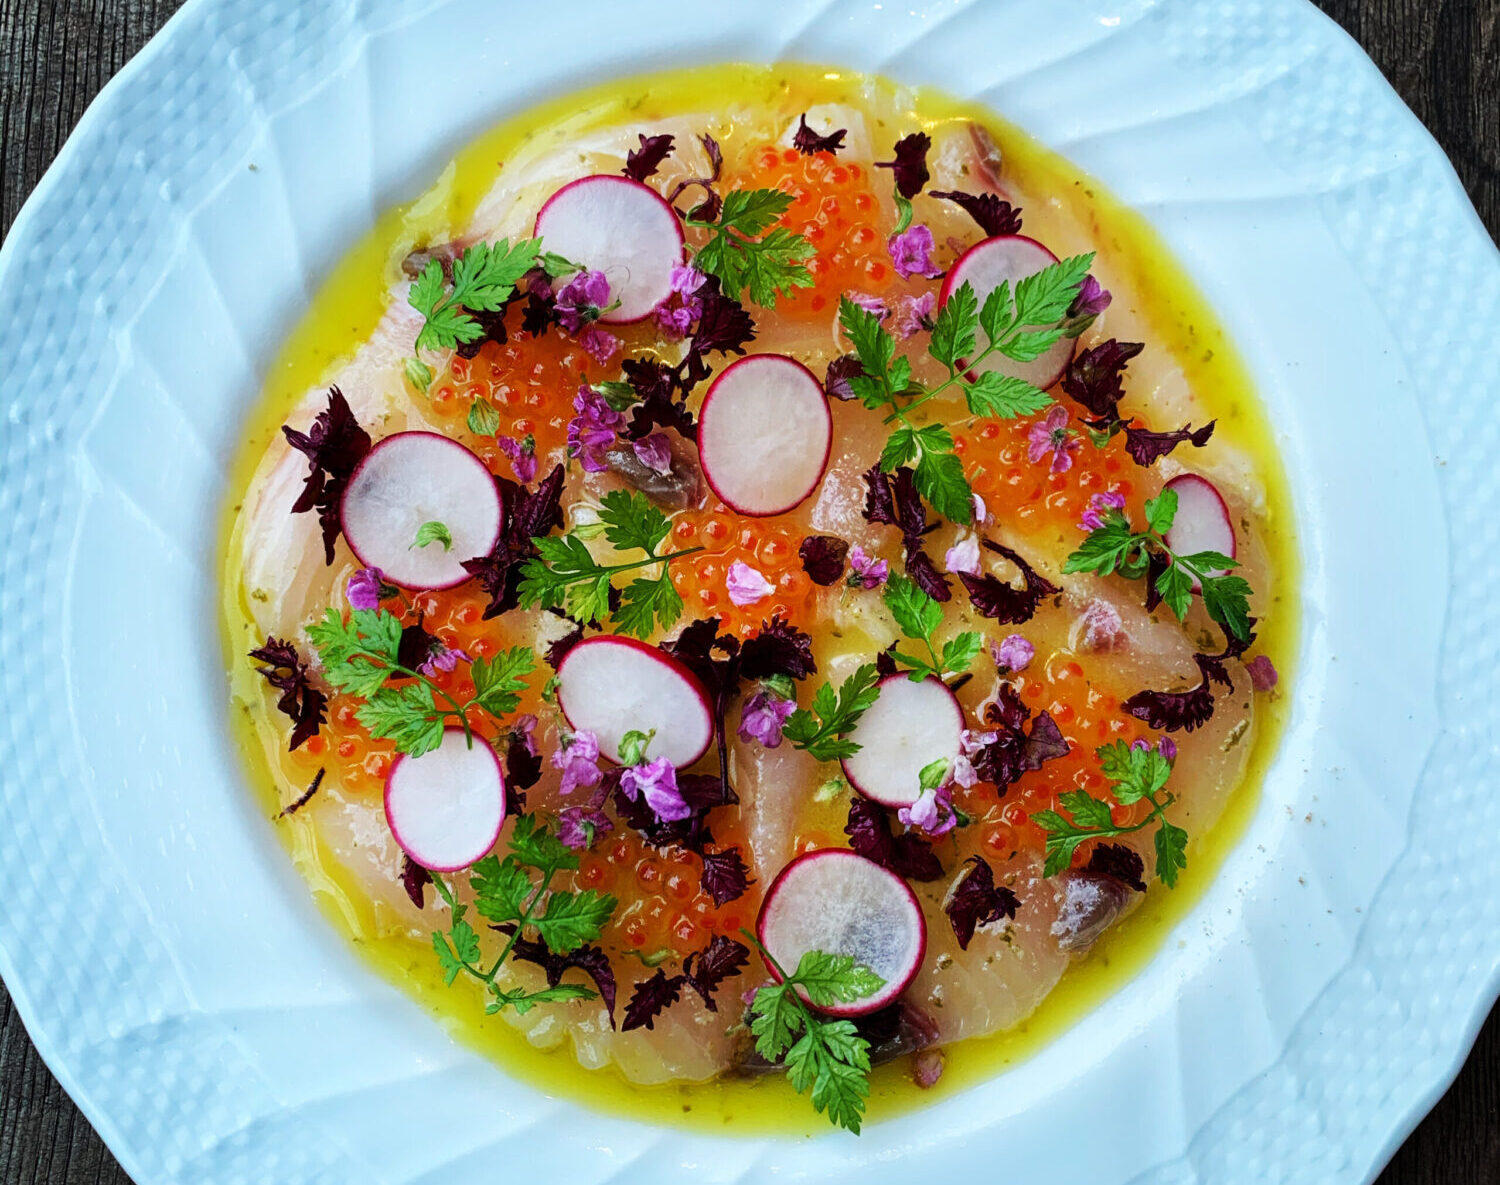 カルパッチョ サーモン 鯛 ブリ プロの華やかな盛り付けで彩るレシピ シェフのレシピ手帳